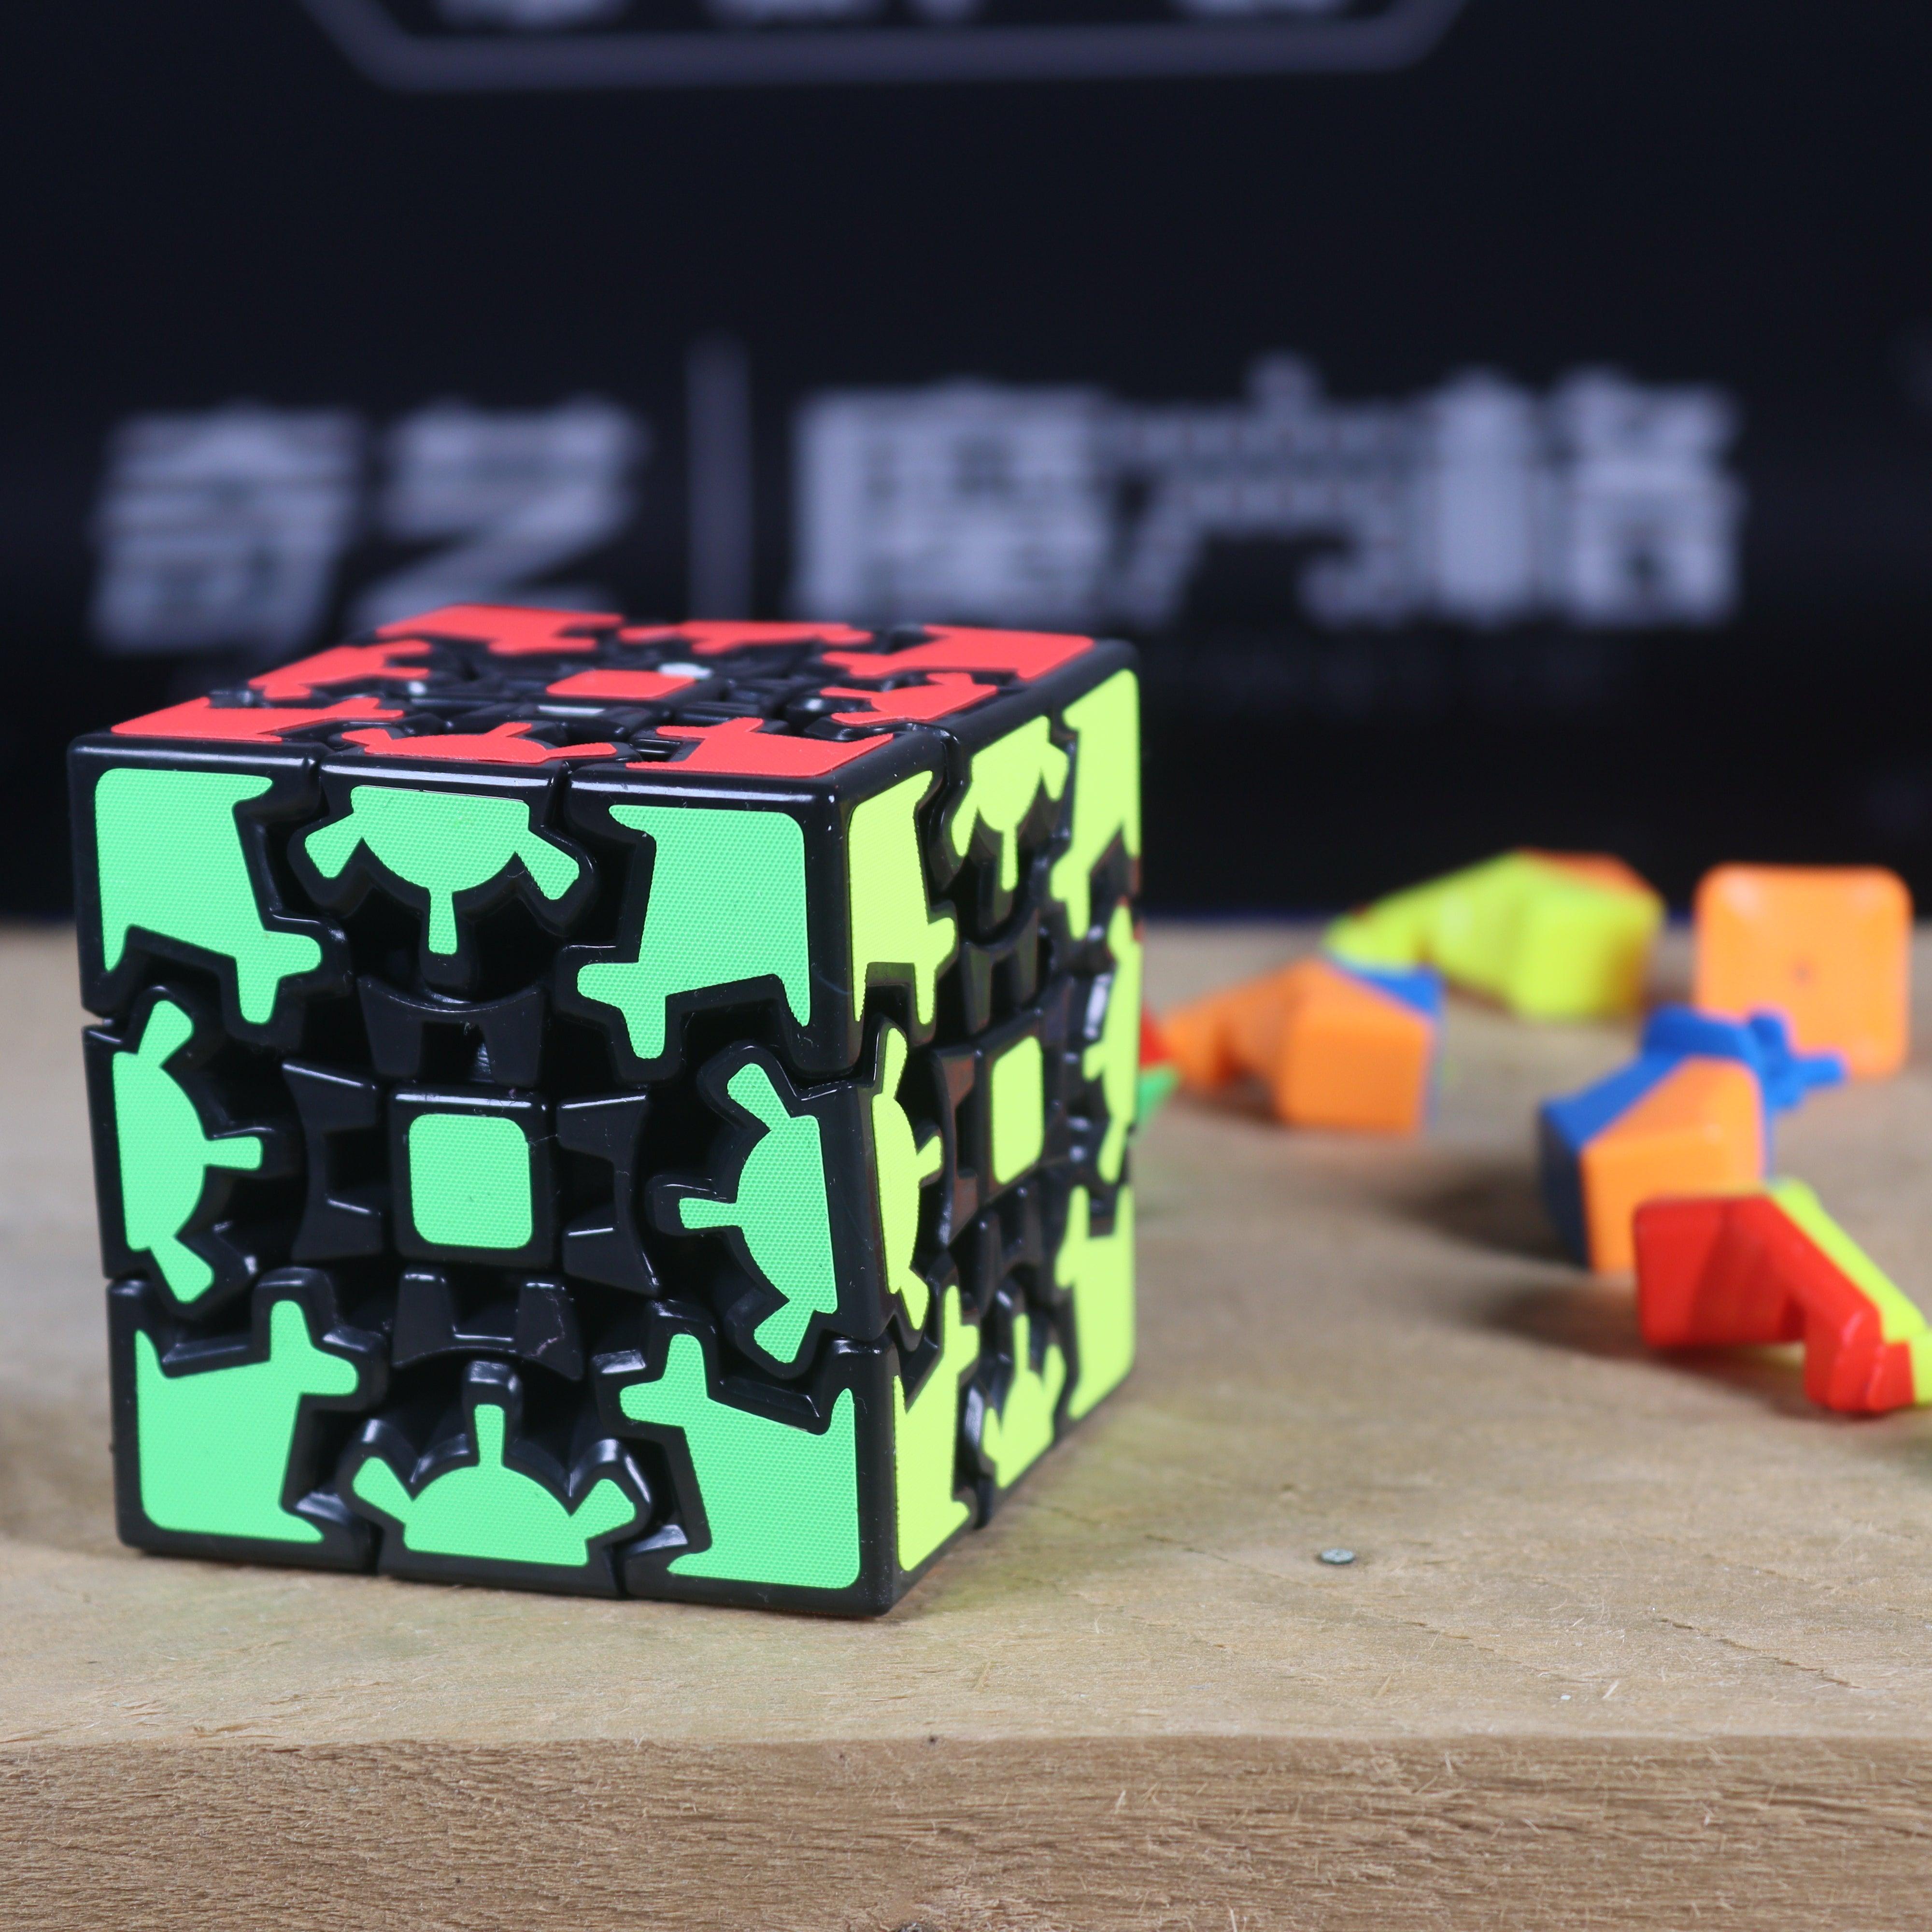 Z-Cube Gear 3x3